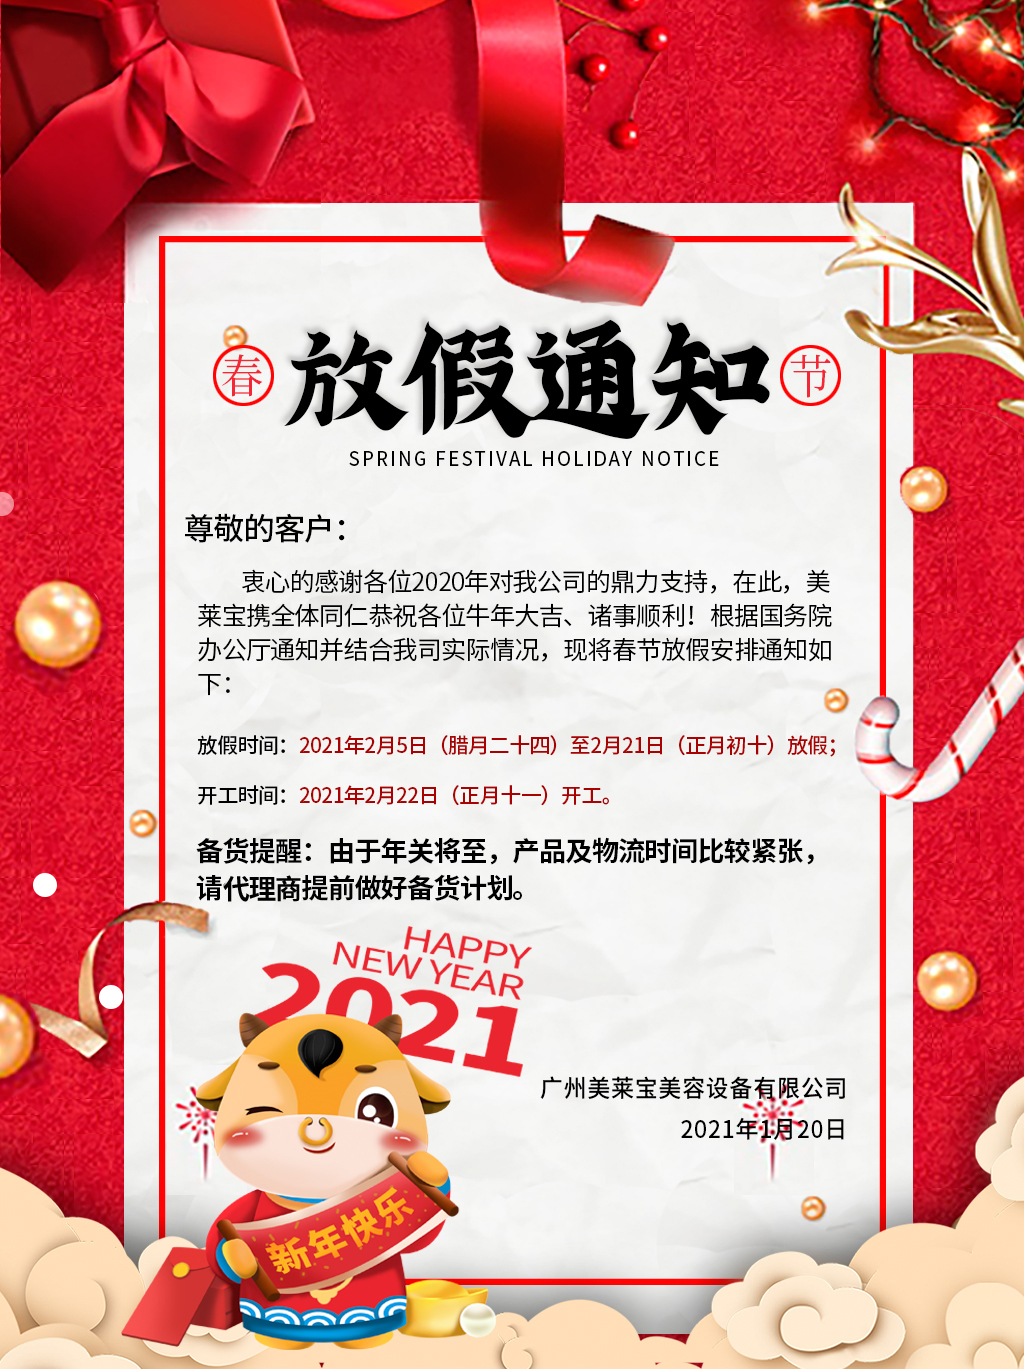 关于广州美莱宝美容设备有限公司2021年春节放假通知